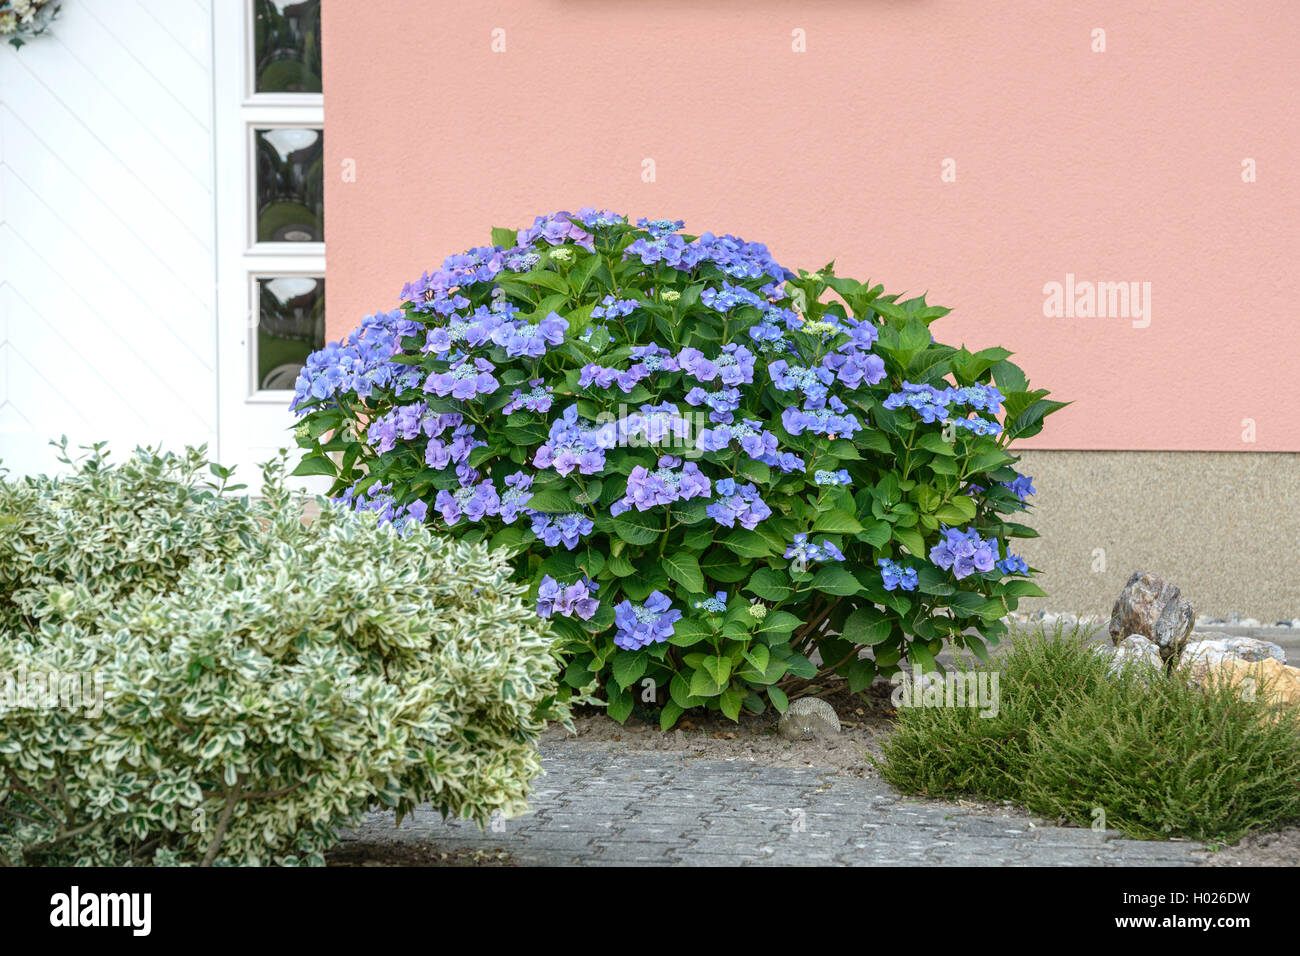 Giardino hydrangea, cappuccio in pizzo ortensia (Hydrangea macrophylla 'Blaumeise', Hydrangea macrophylla Blaumeise), cultivar Blaumeise, Germania Foto Stock